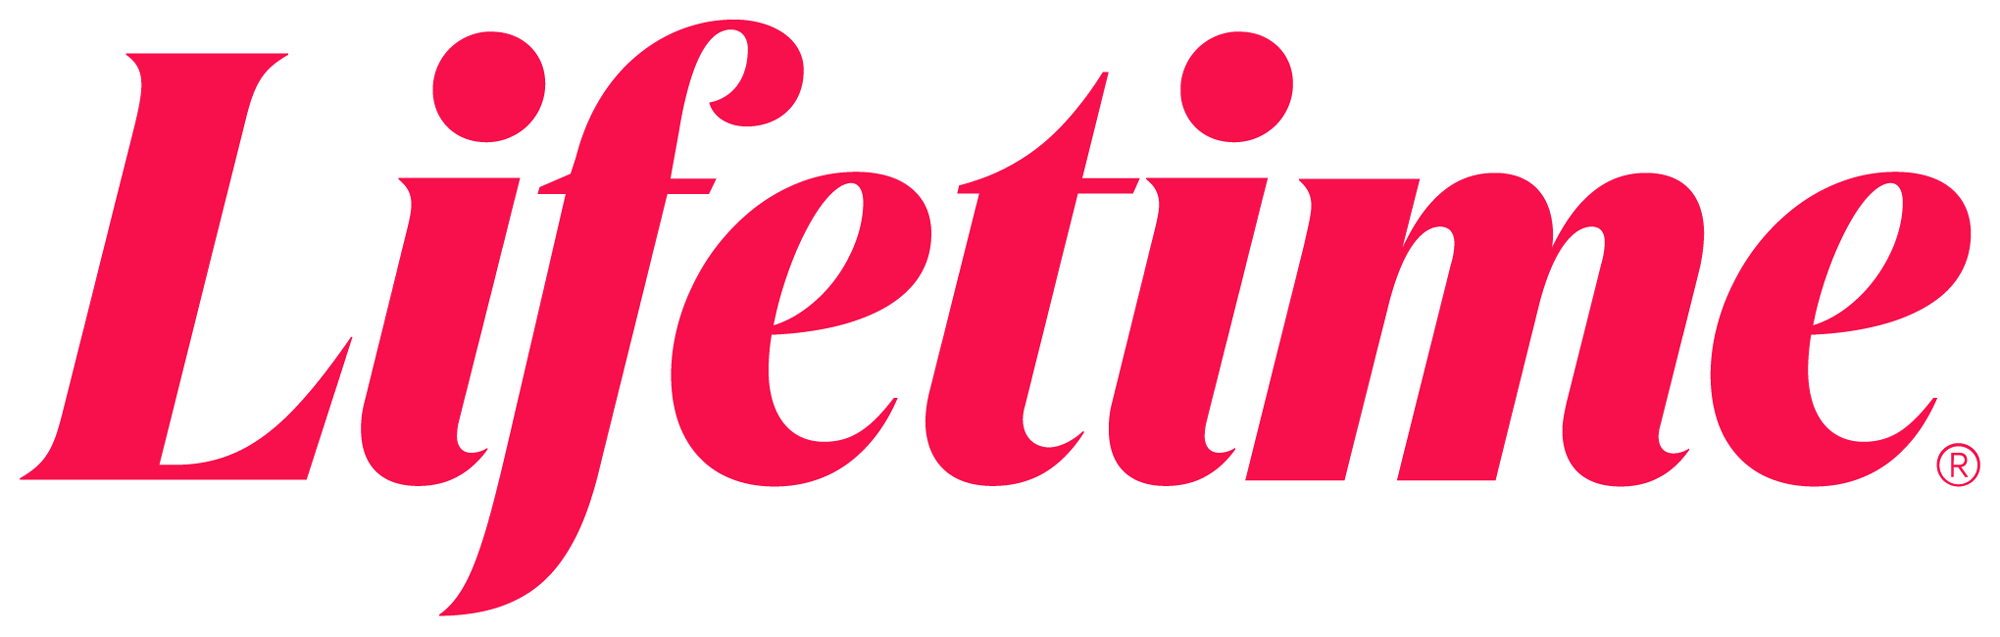 New Logo for Lifetime